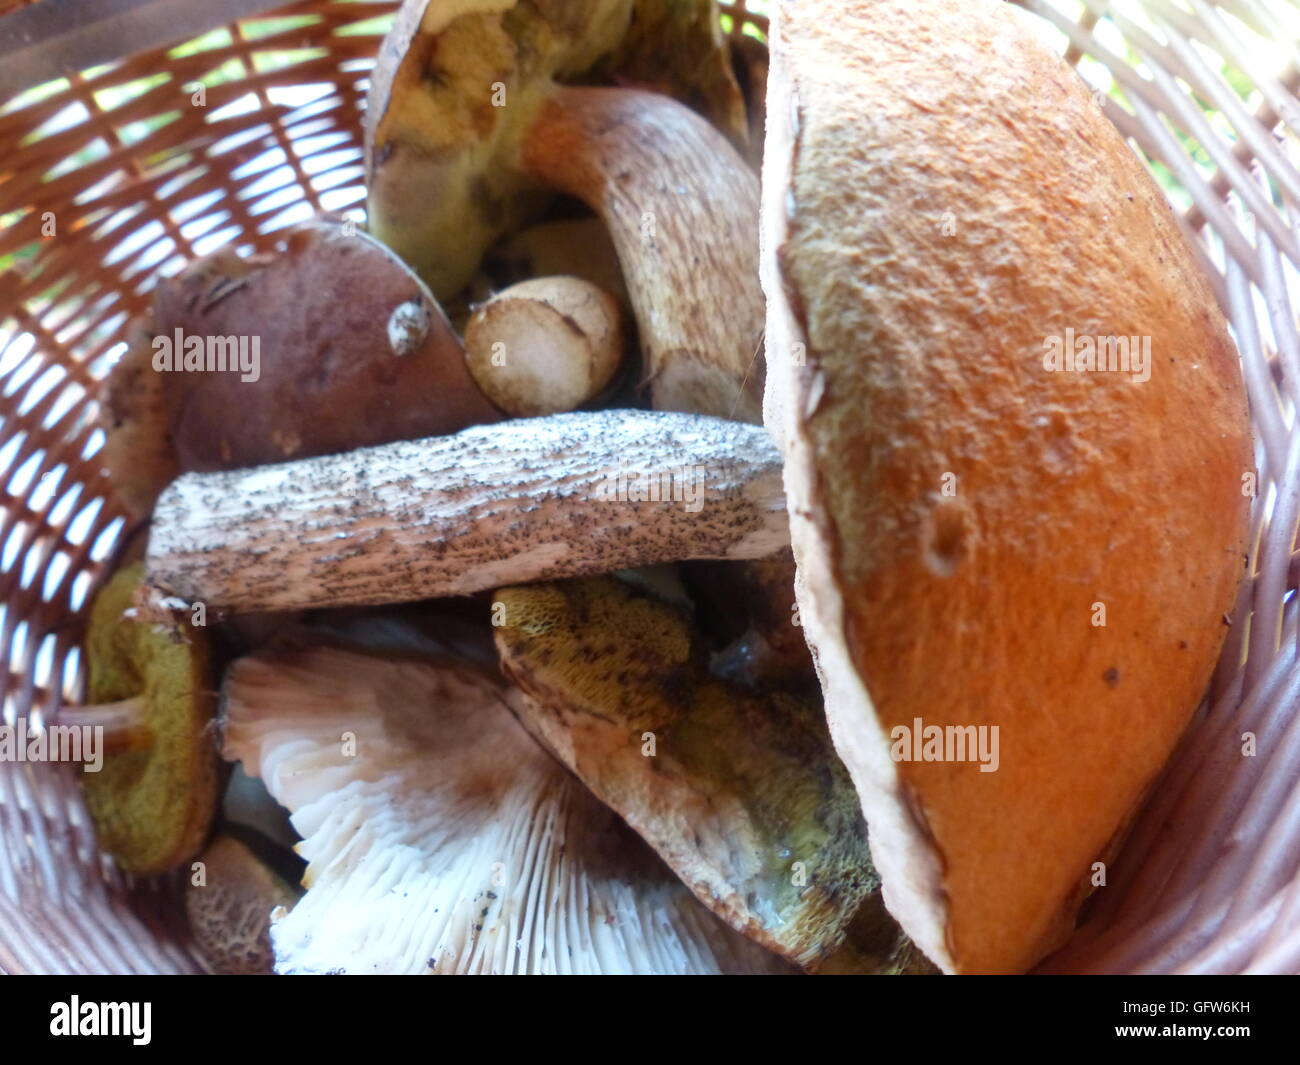 Korb mit frisch gepflückten Pilz. Pilze sammeln ist eine nationale Hobby in Tschechien Stockfoto